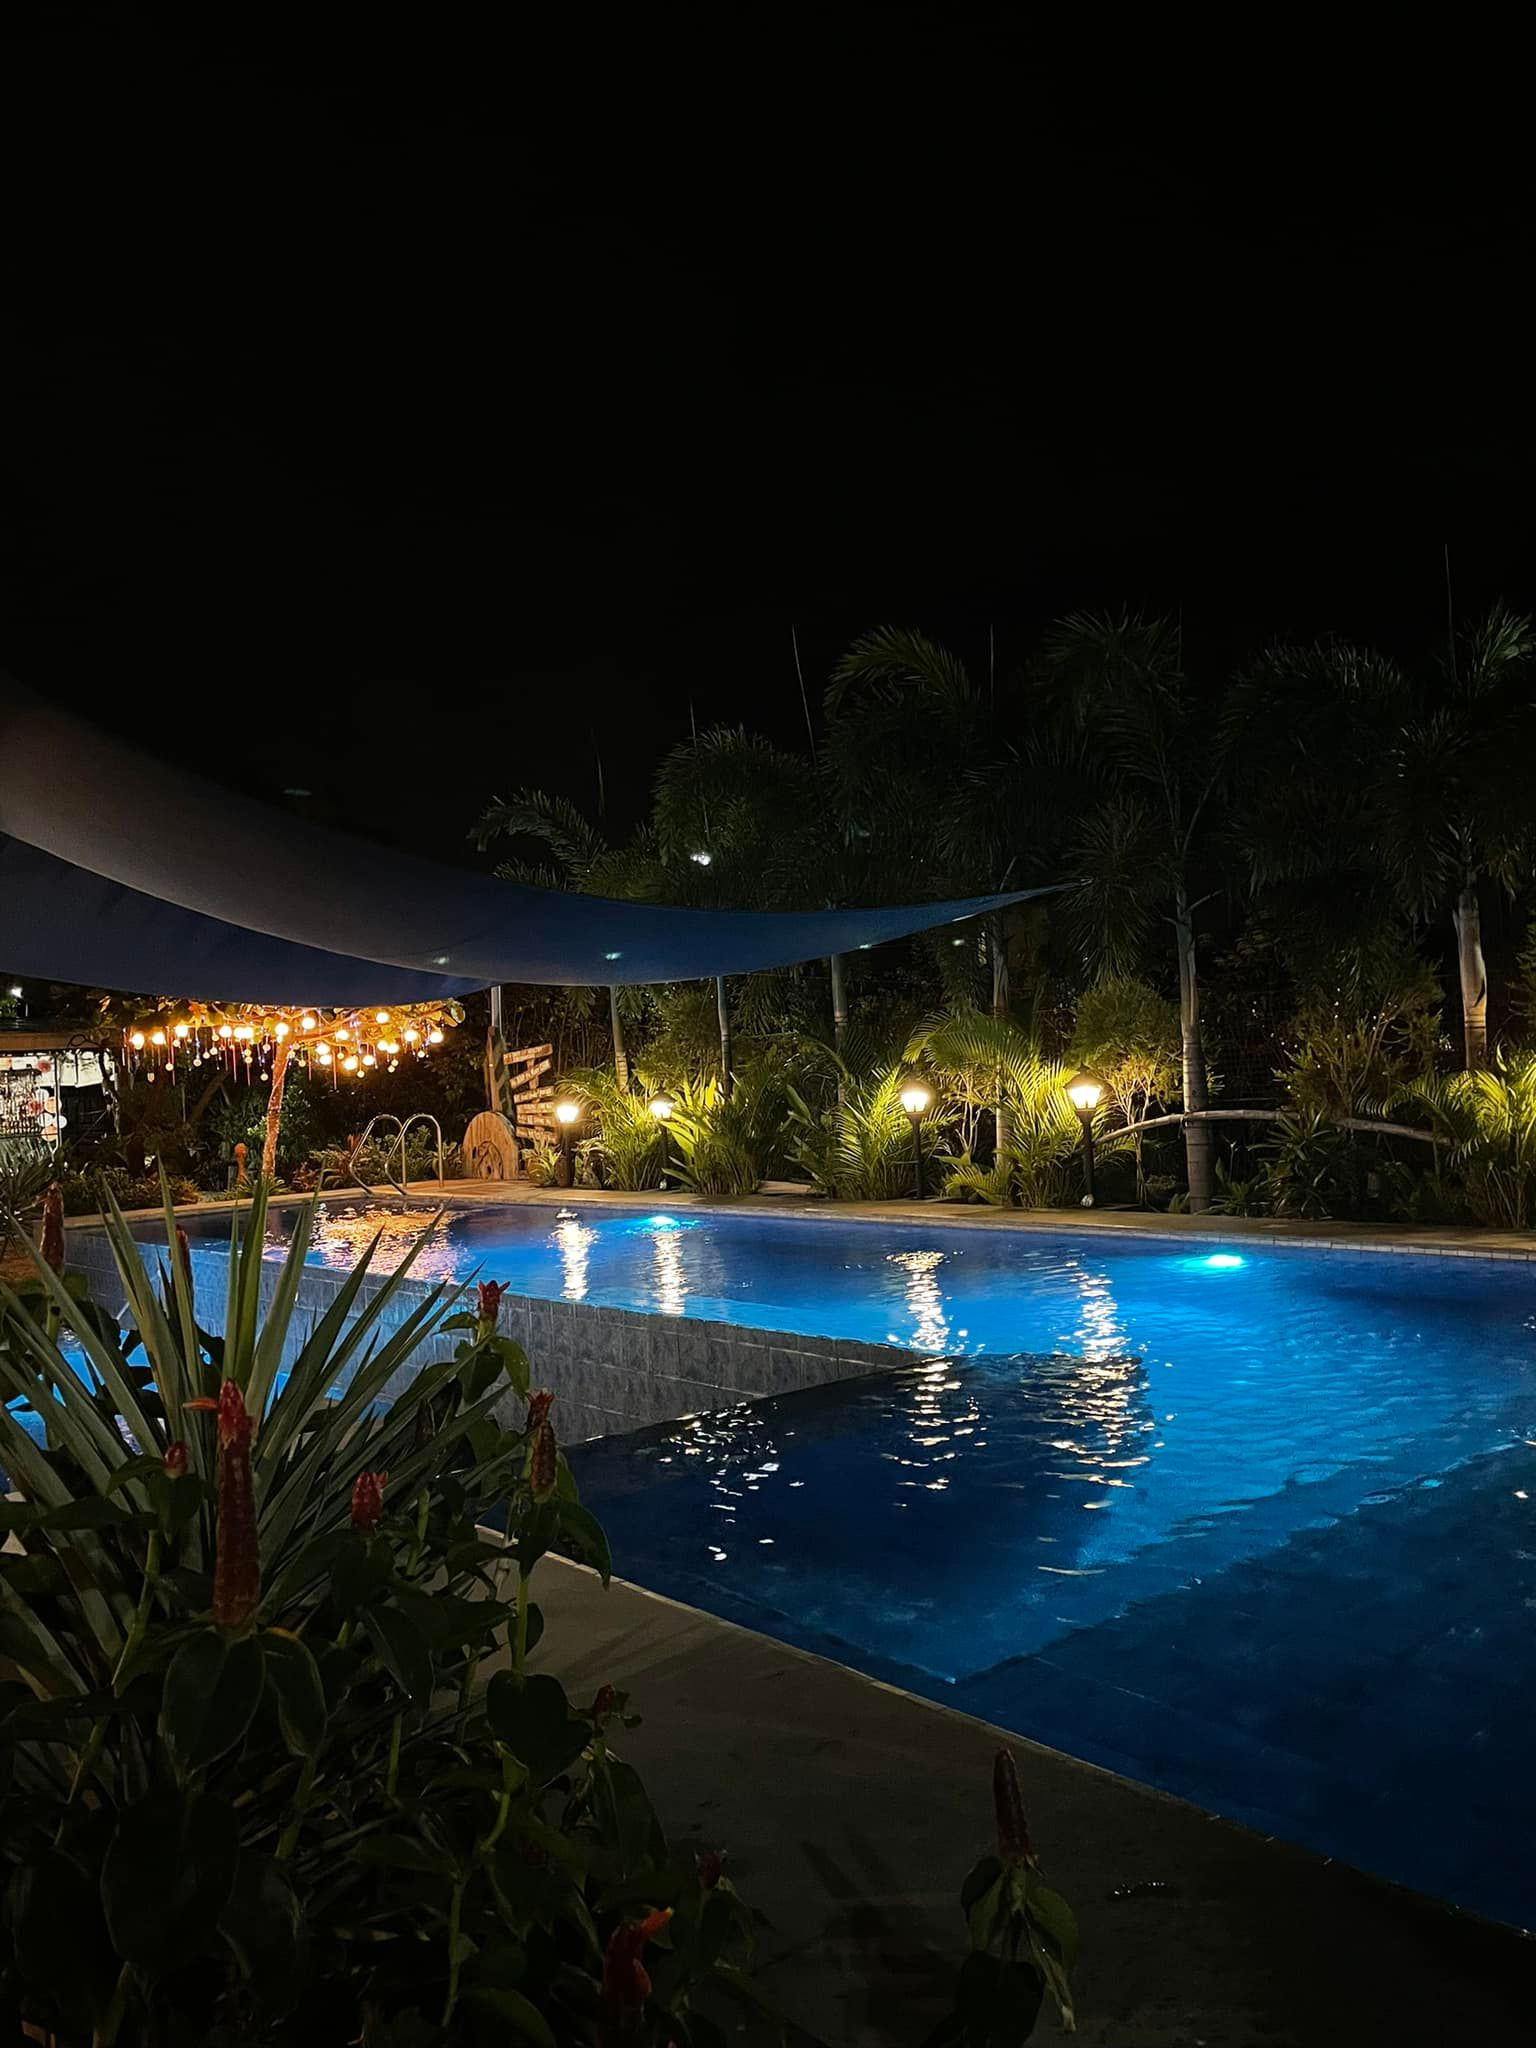 Casa de Coracion - Exclusive Resort and Events